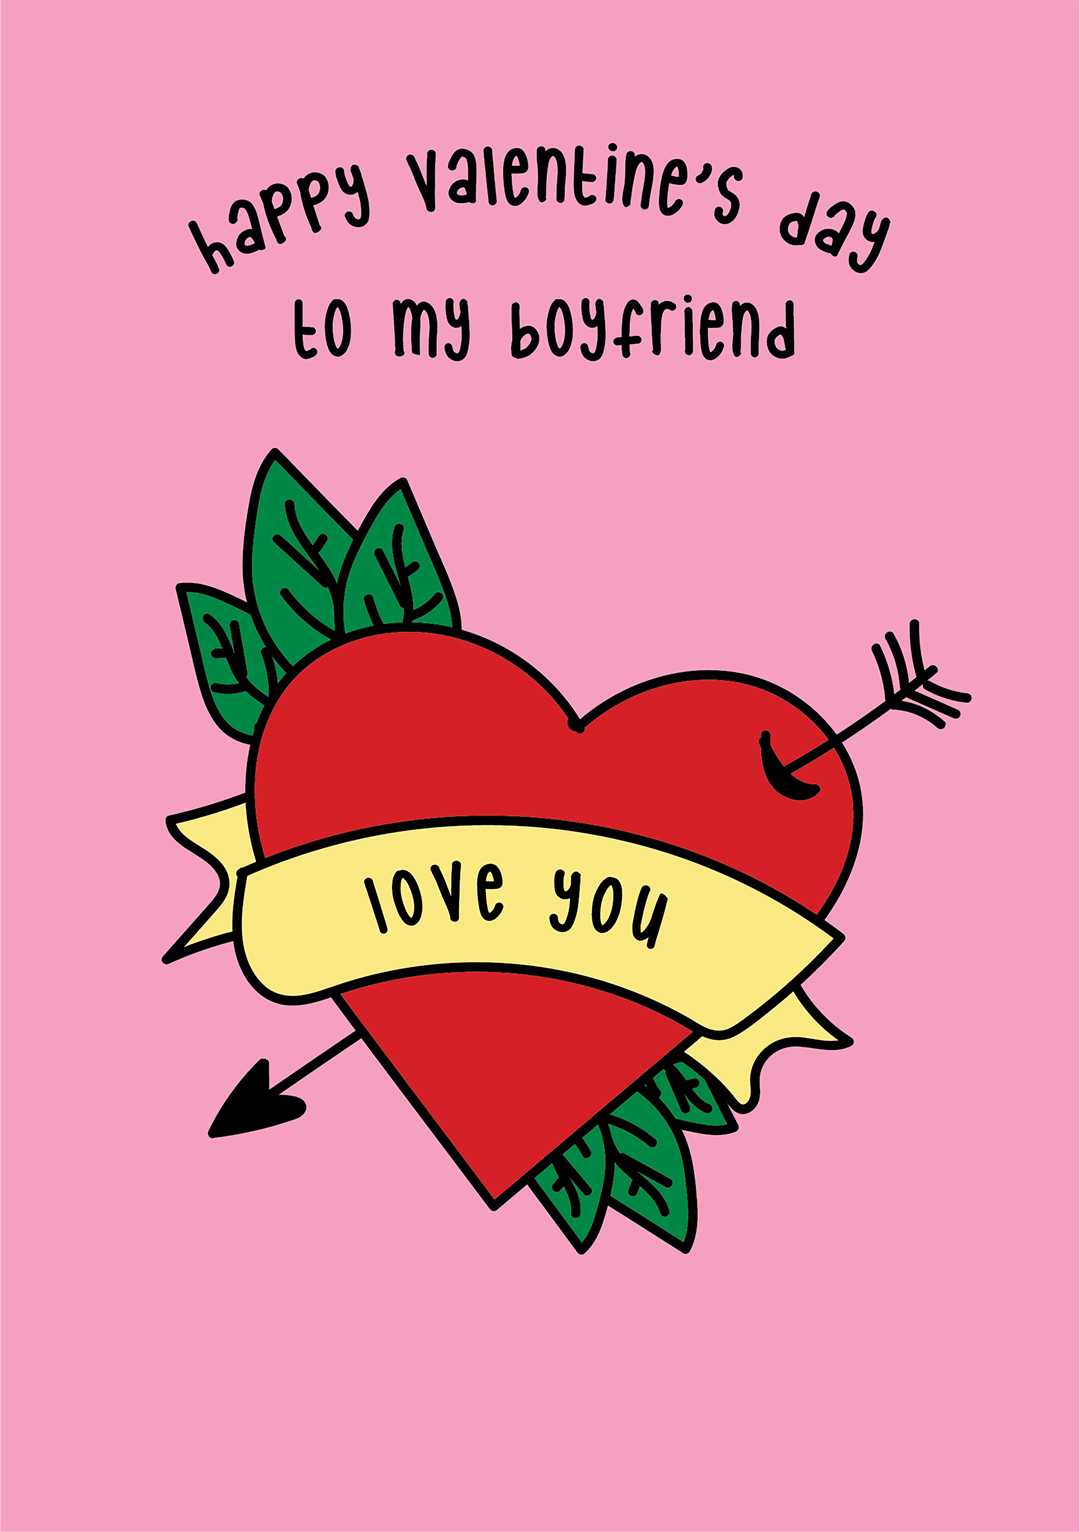 Happy Valentine's Day Card Boyfriend - Arrow Through Heart